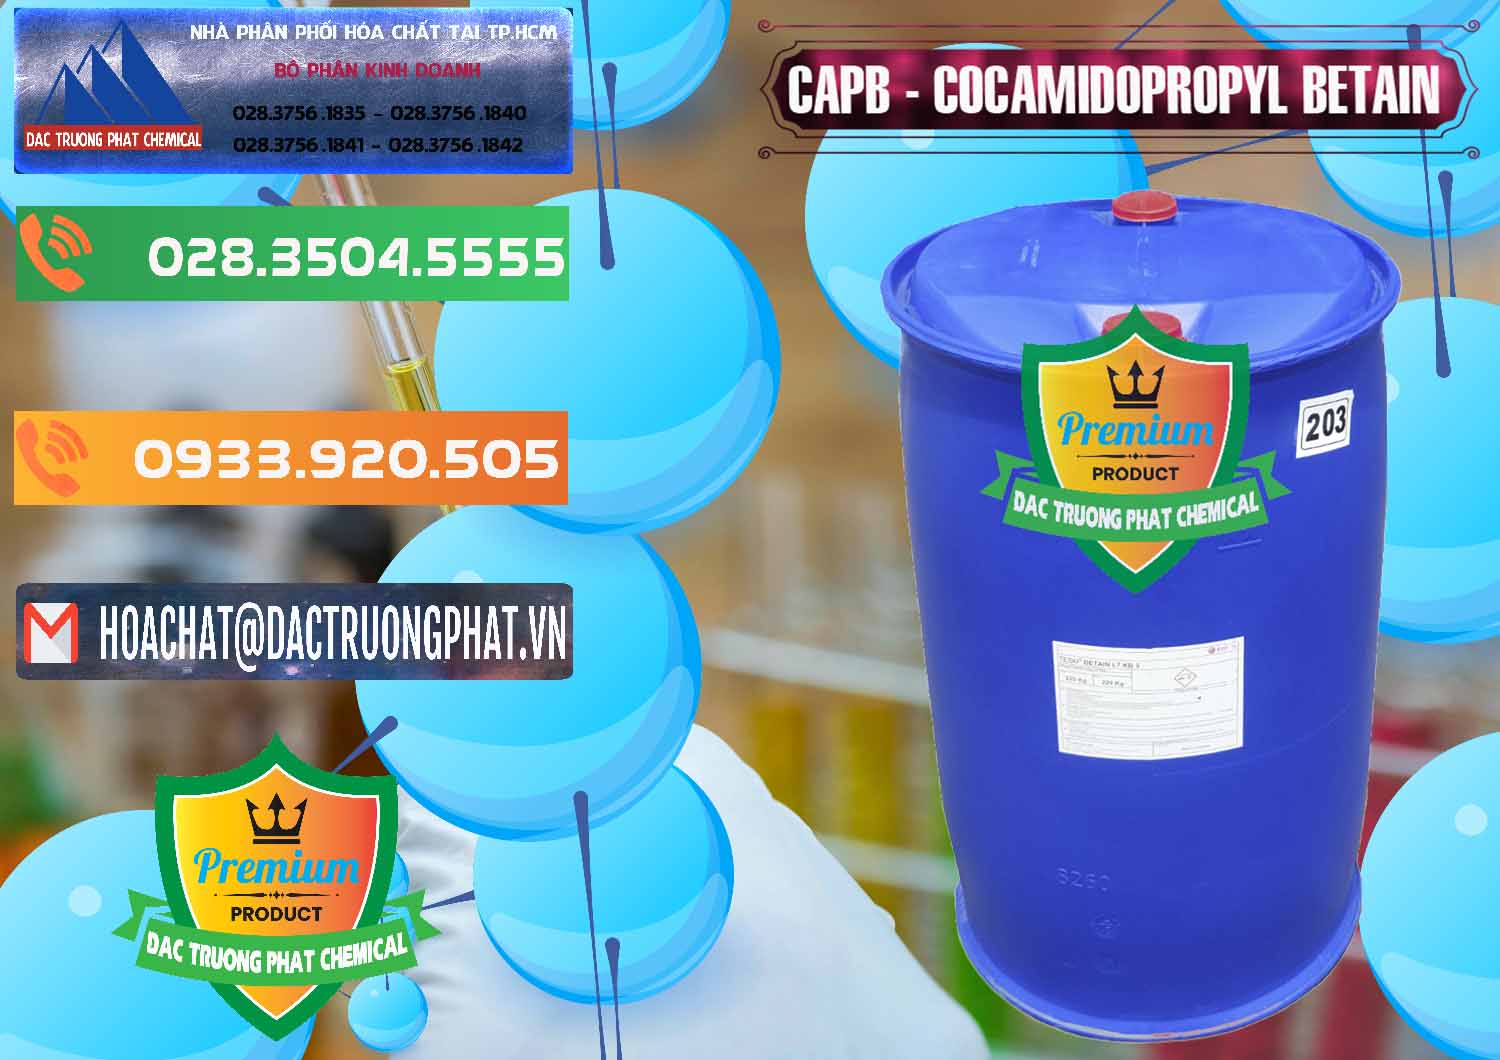 Kinh doanh ( bán ) Cocamidopropyl Betaine - CAPB Tego Indonesia - 0327 - Nơi chuyên bán ( phân phối ) hóa chất tại TP.HCM - hoachatxulynuoc.com.vn